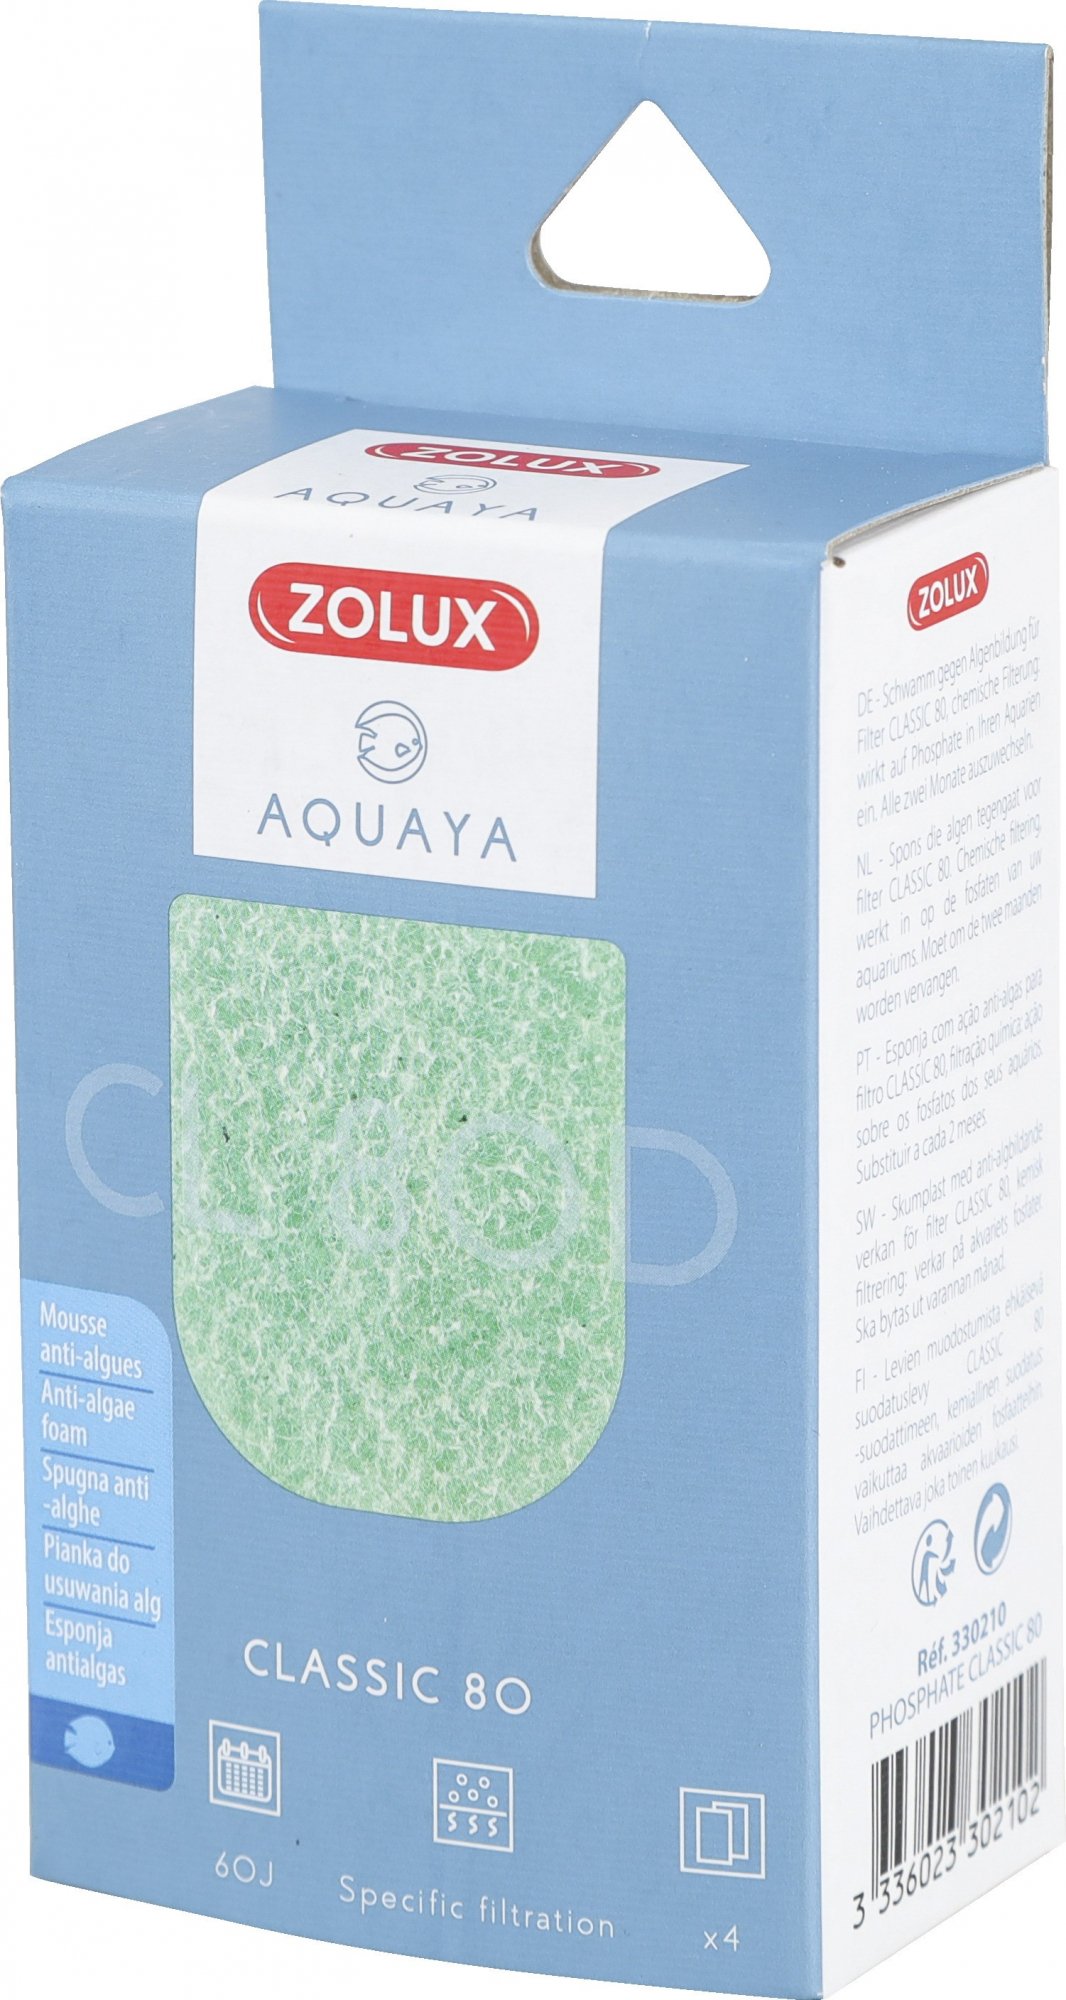 Mousse antifosfato per filtro Classic Aquaya